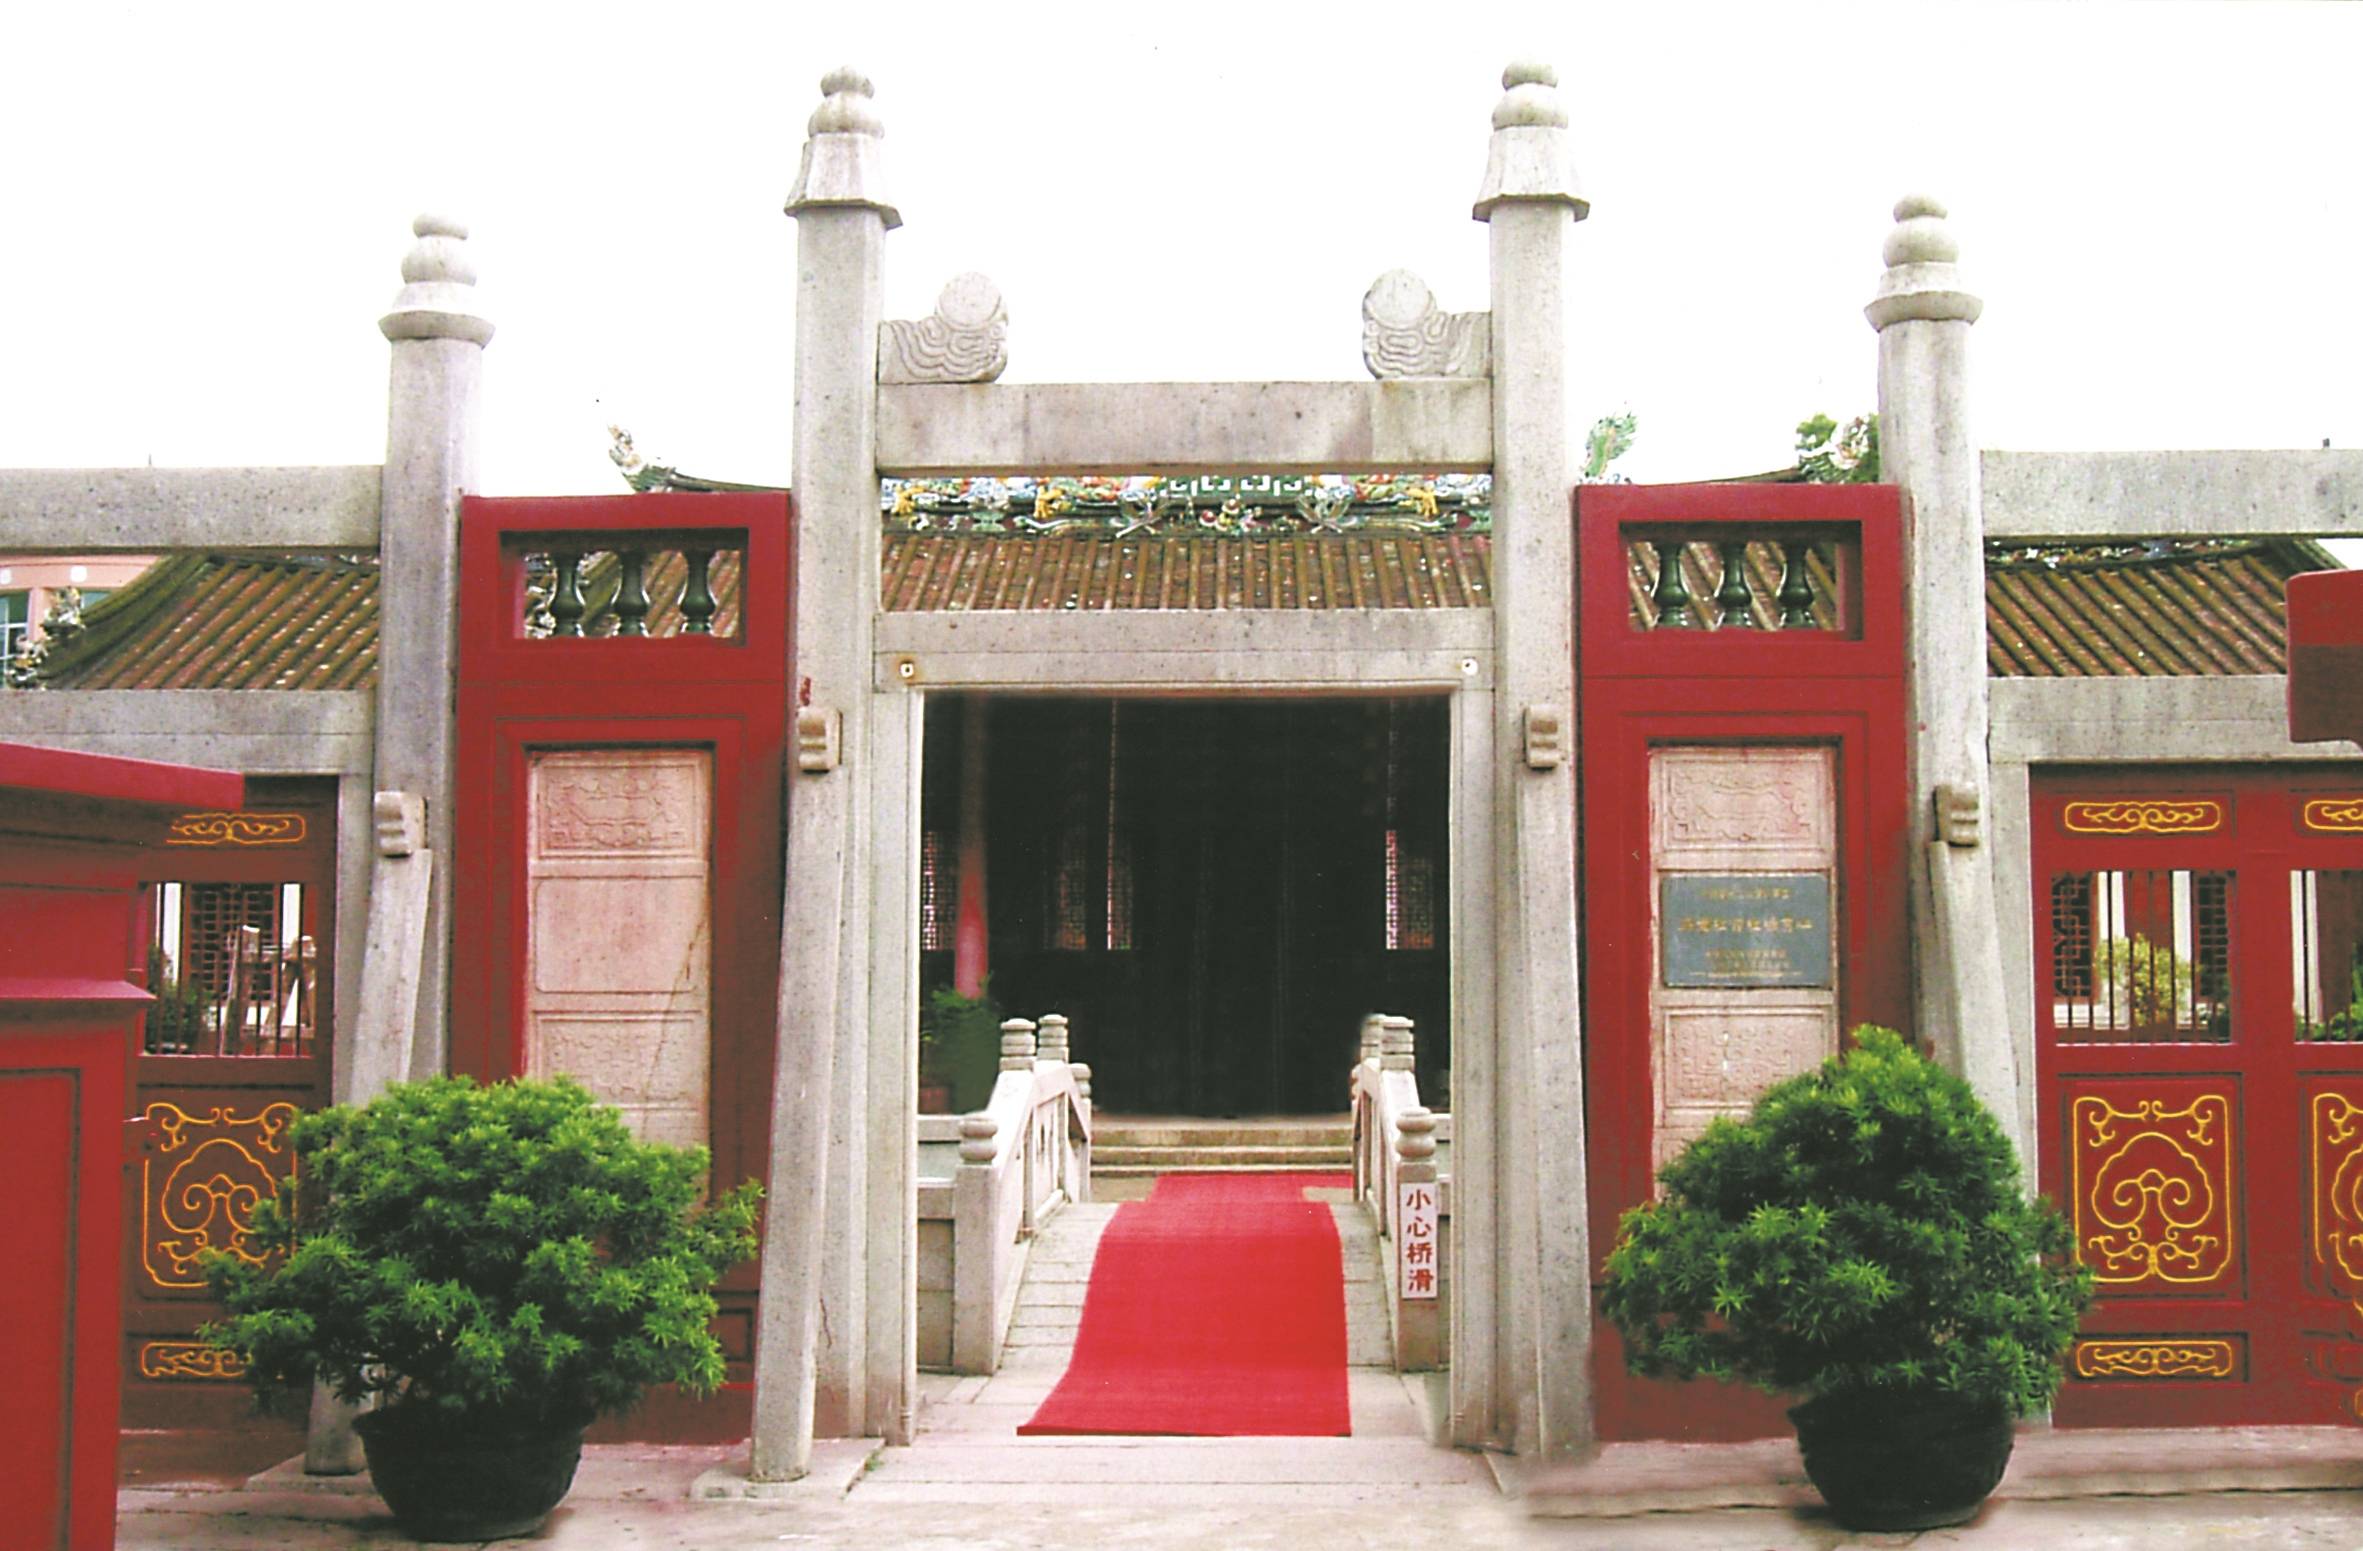 红宫红场:中国第一个红色苏维埃政权在此诞生